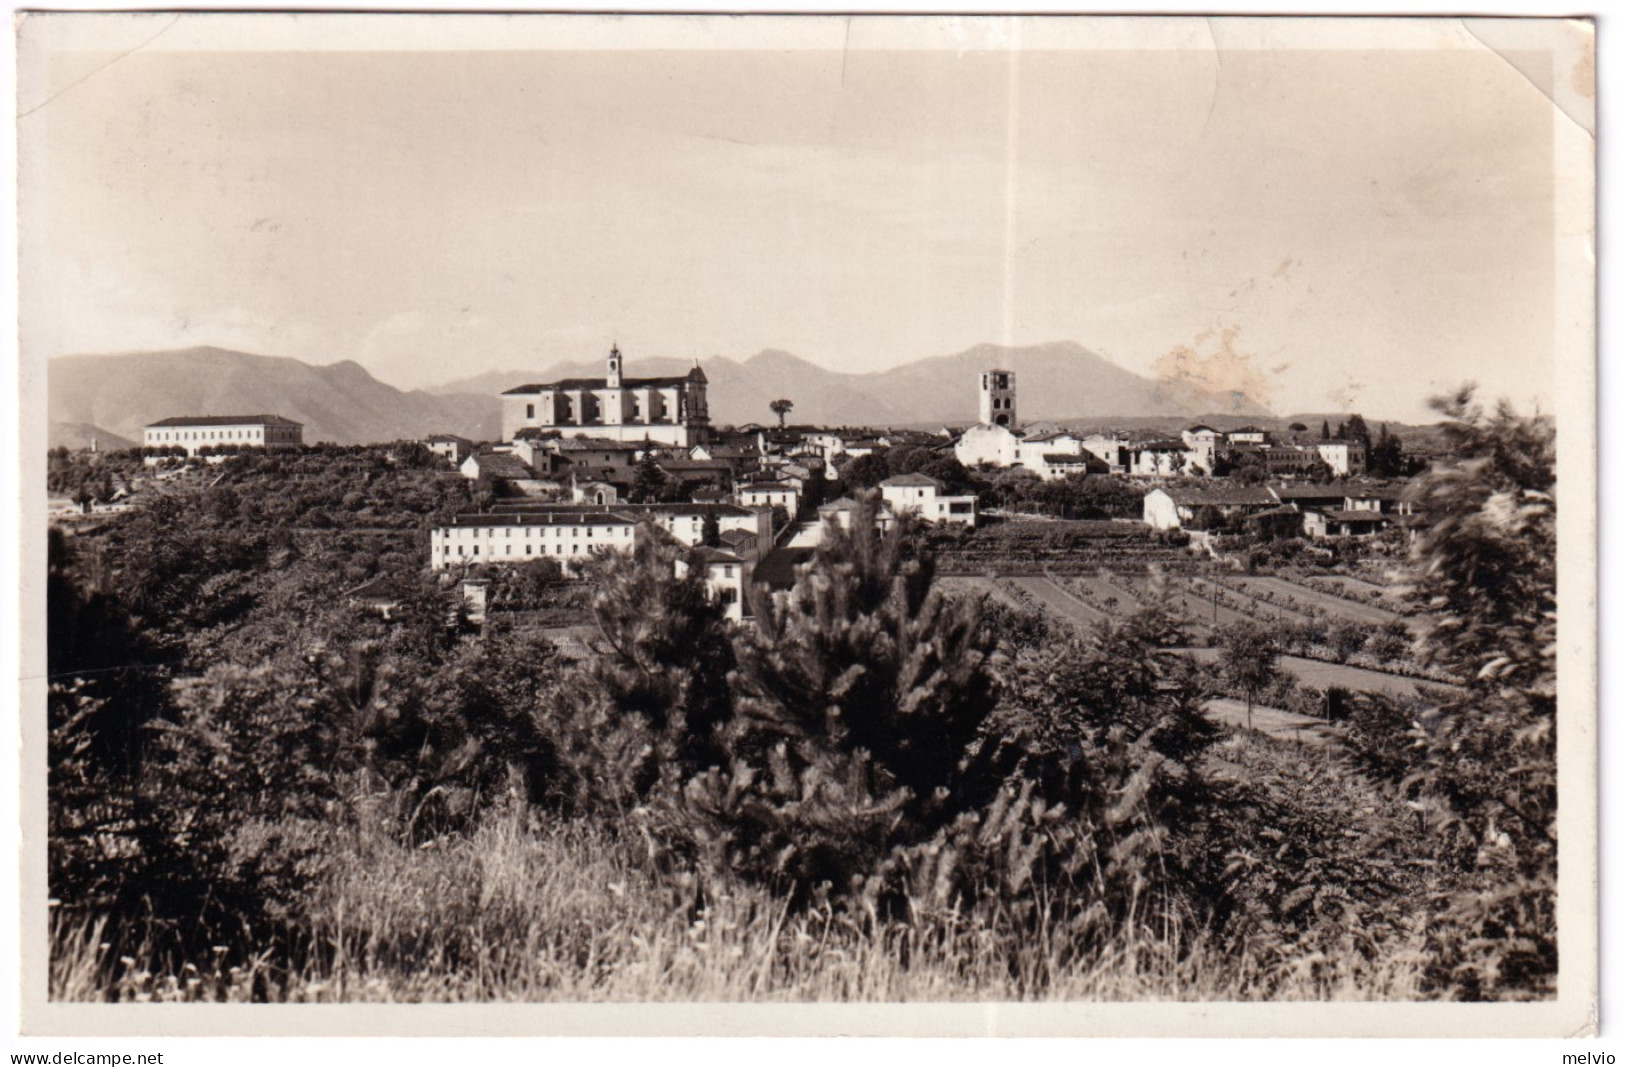 1941-BEDIZZOLE Panorama Viaggiata Un Angolo Con Piega - Brescia